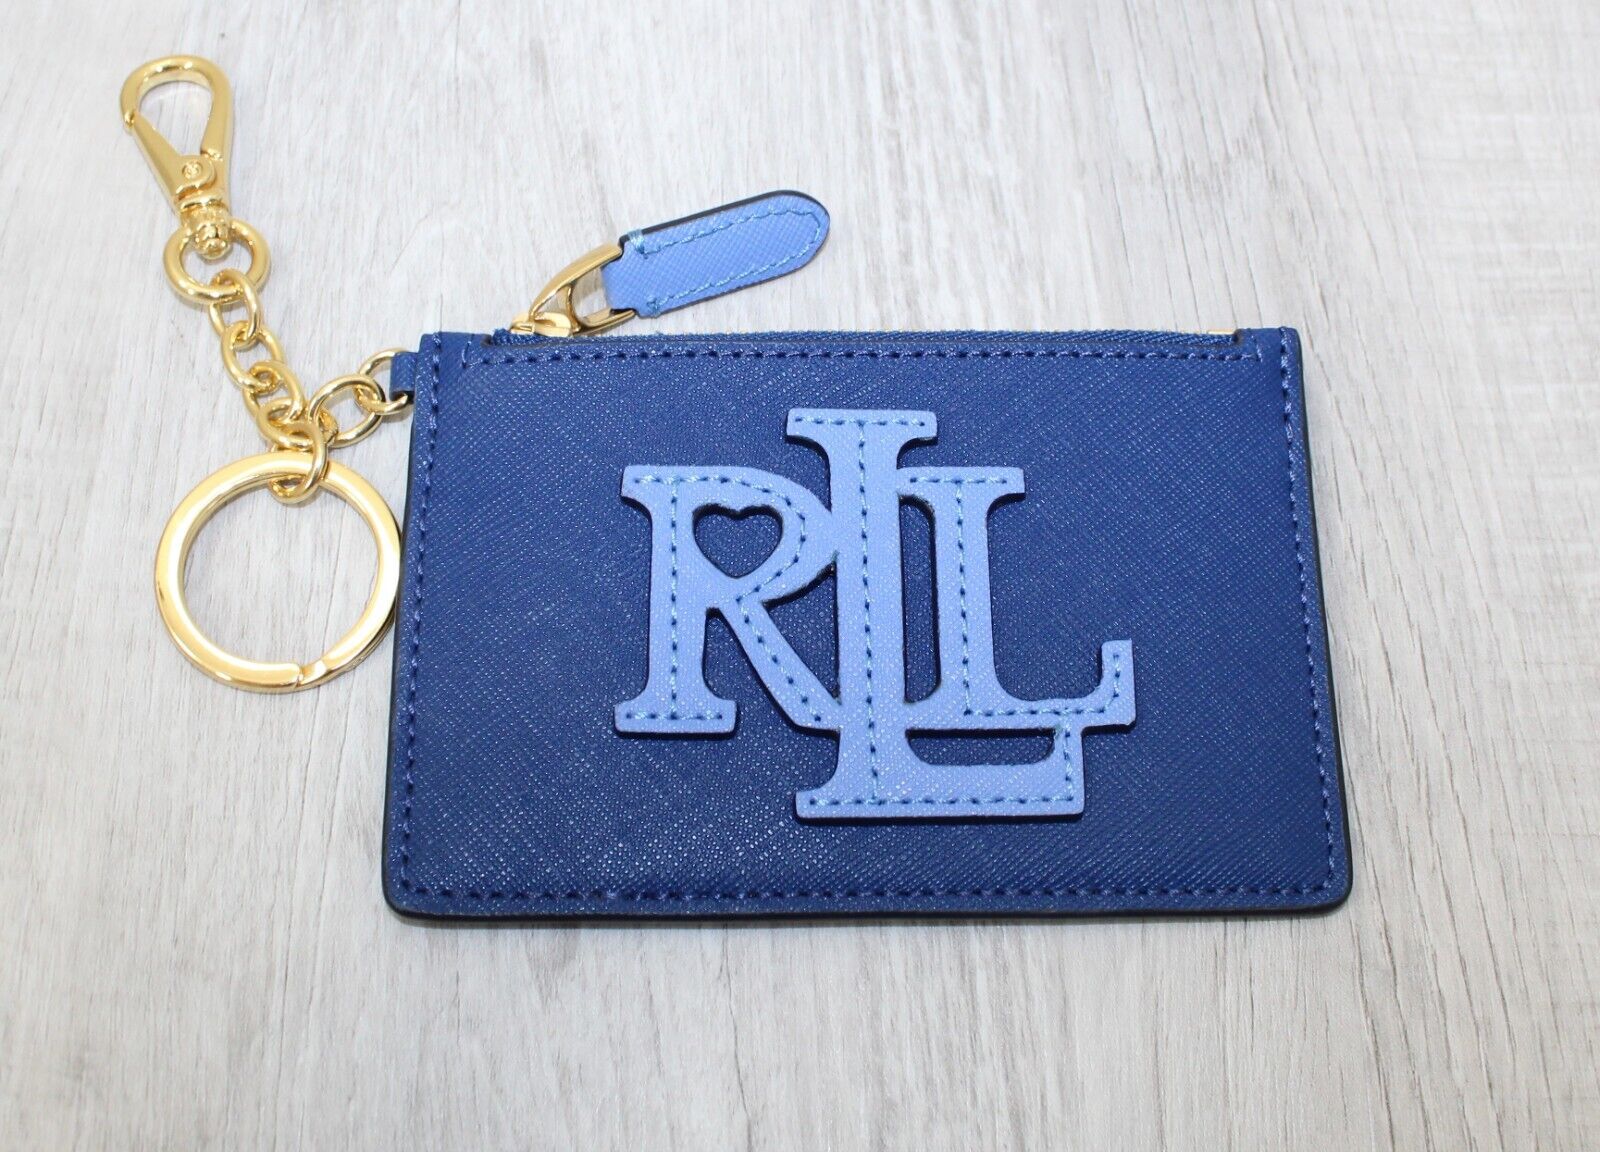 Lauren Ralph Lauren Woman's Crosshatch Leather Zip Card Case